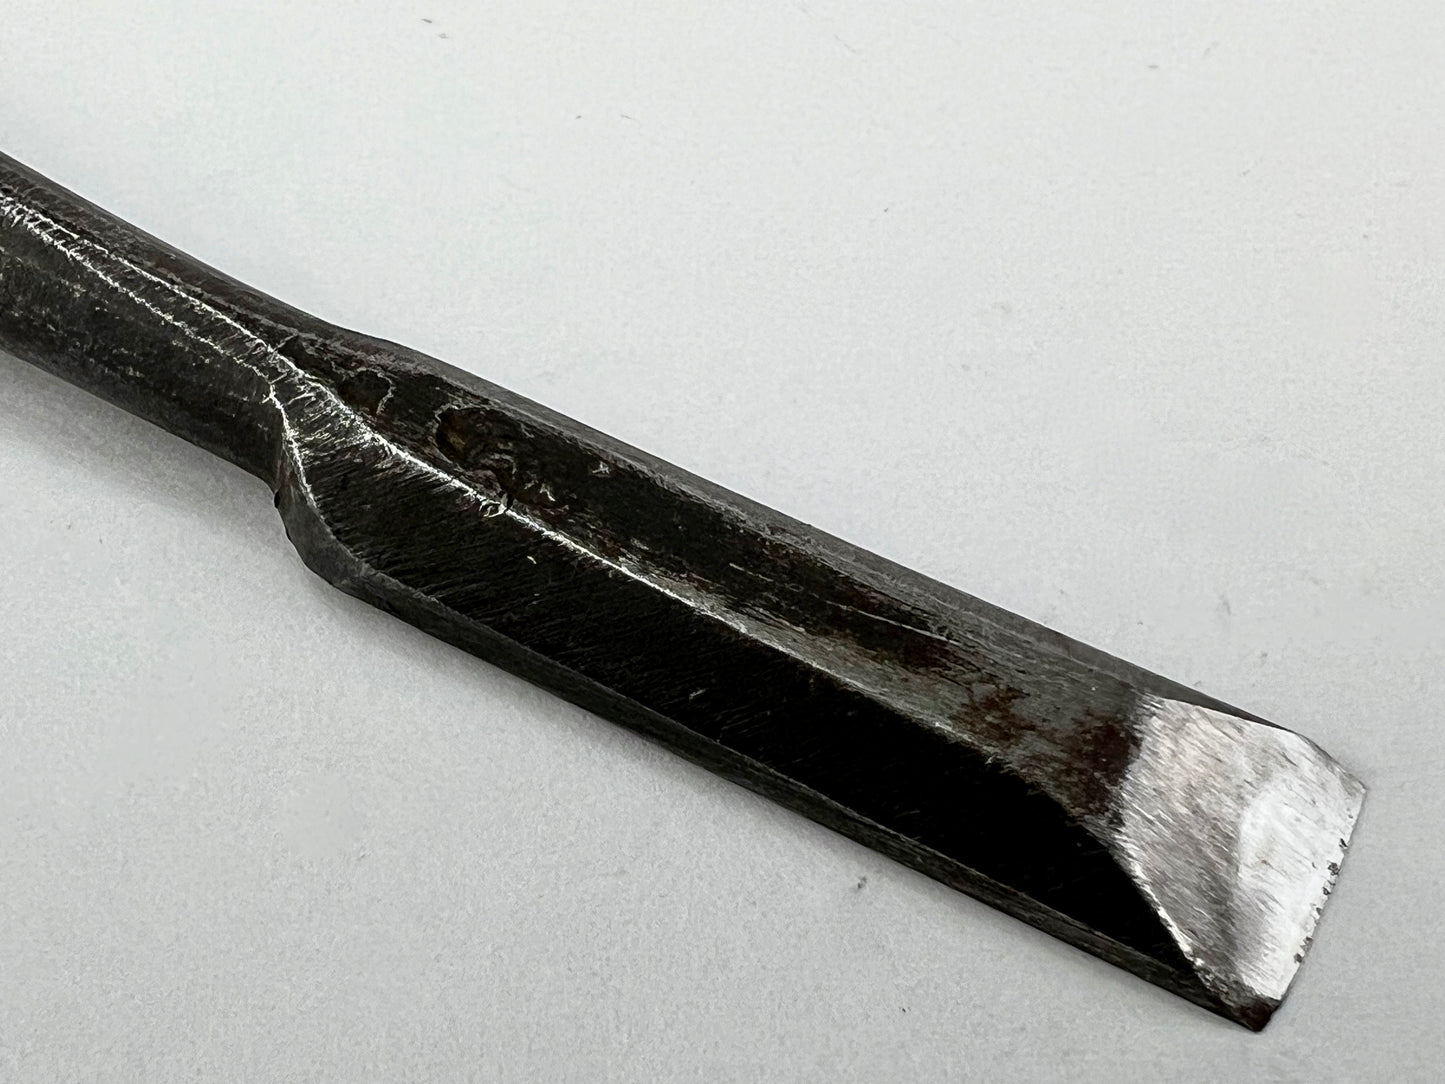 Vintage Japanese Signed Nomi Chisel 7/32" (11mm) Forged Iron Blade & Macassar Ebony Handle